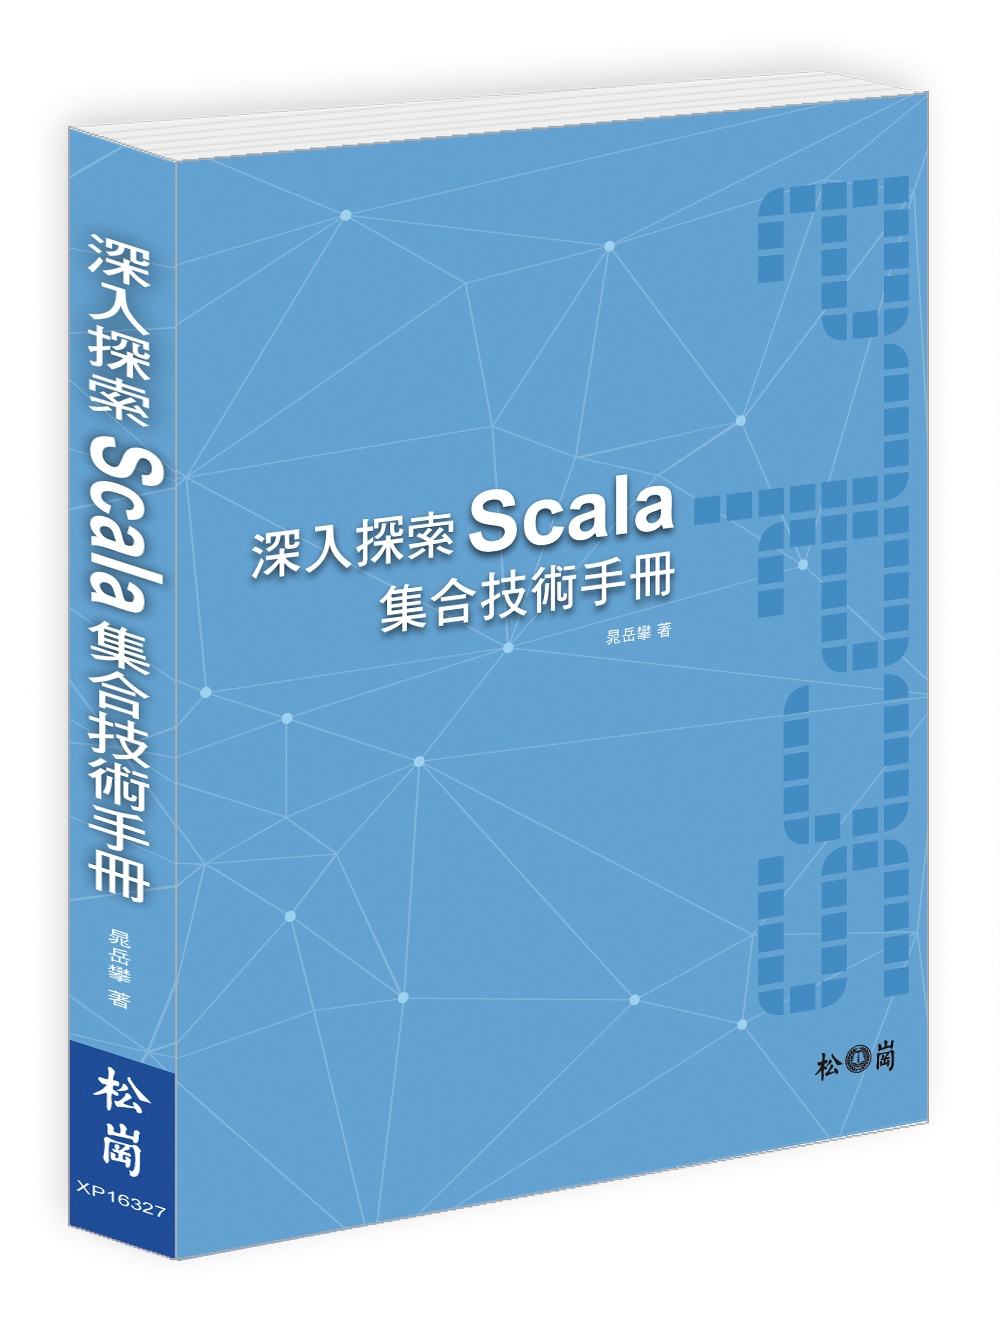 深入探索Scala集合技術手冊